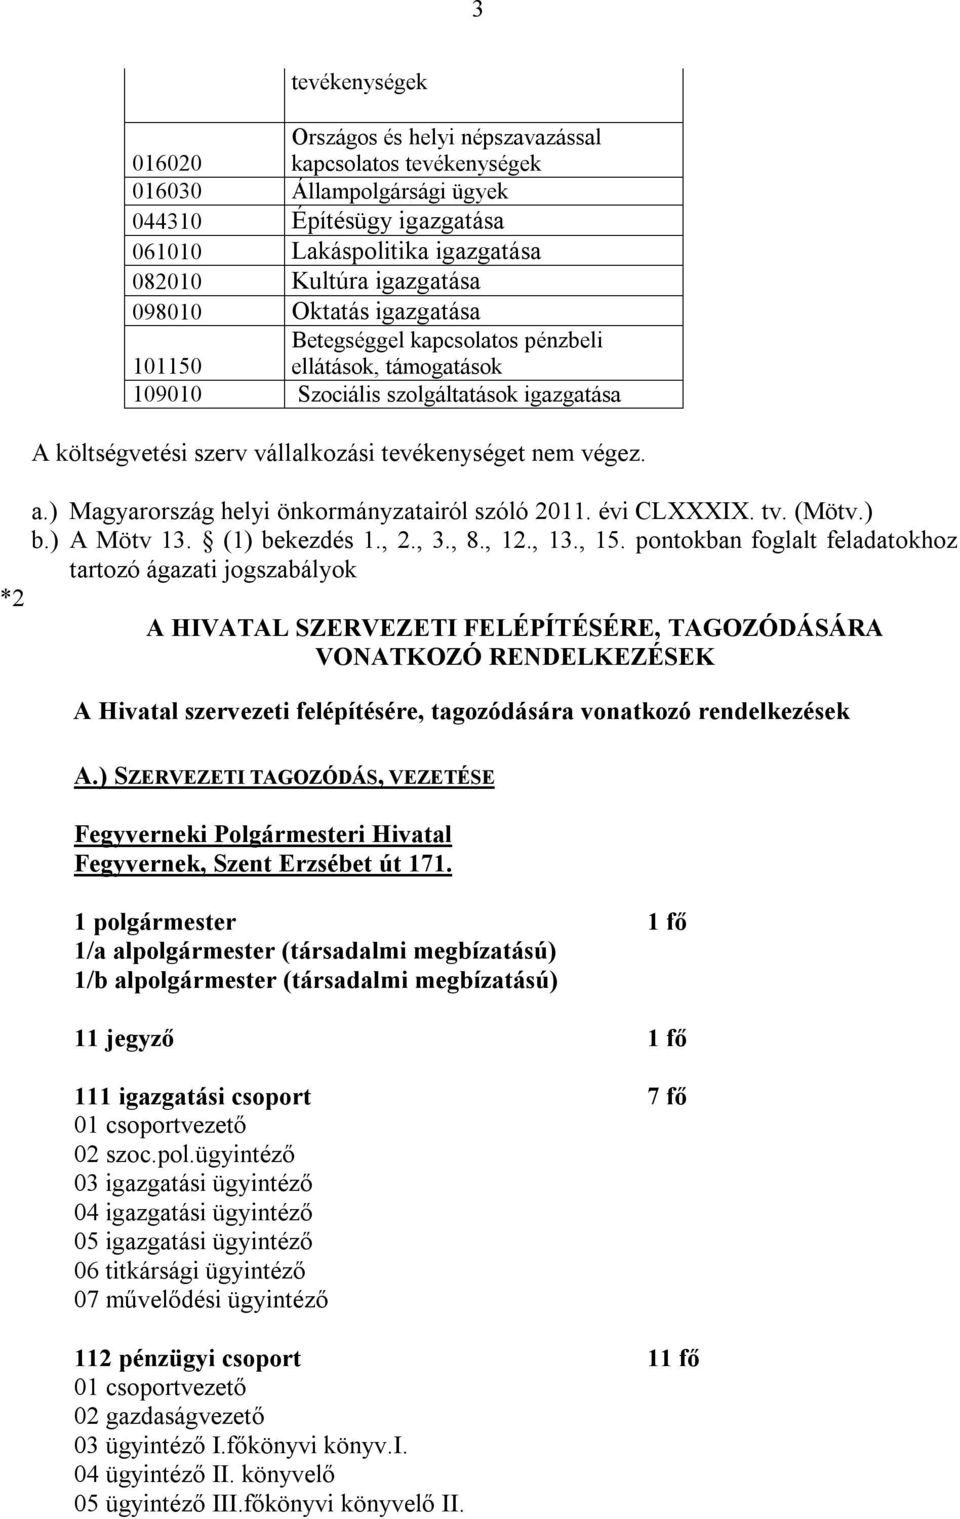 ) Magyarország helyi önkormányzatairól szóló 2011. évi CLXXXIX. tv. (Mötv.) b.) A Mötv 13. (1) bekezdés 1., 2., 3., 8., 12., 13., 15.